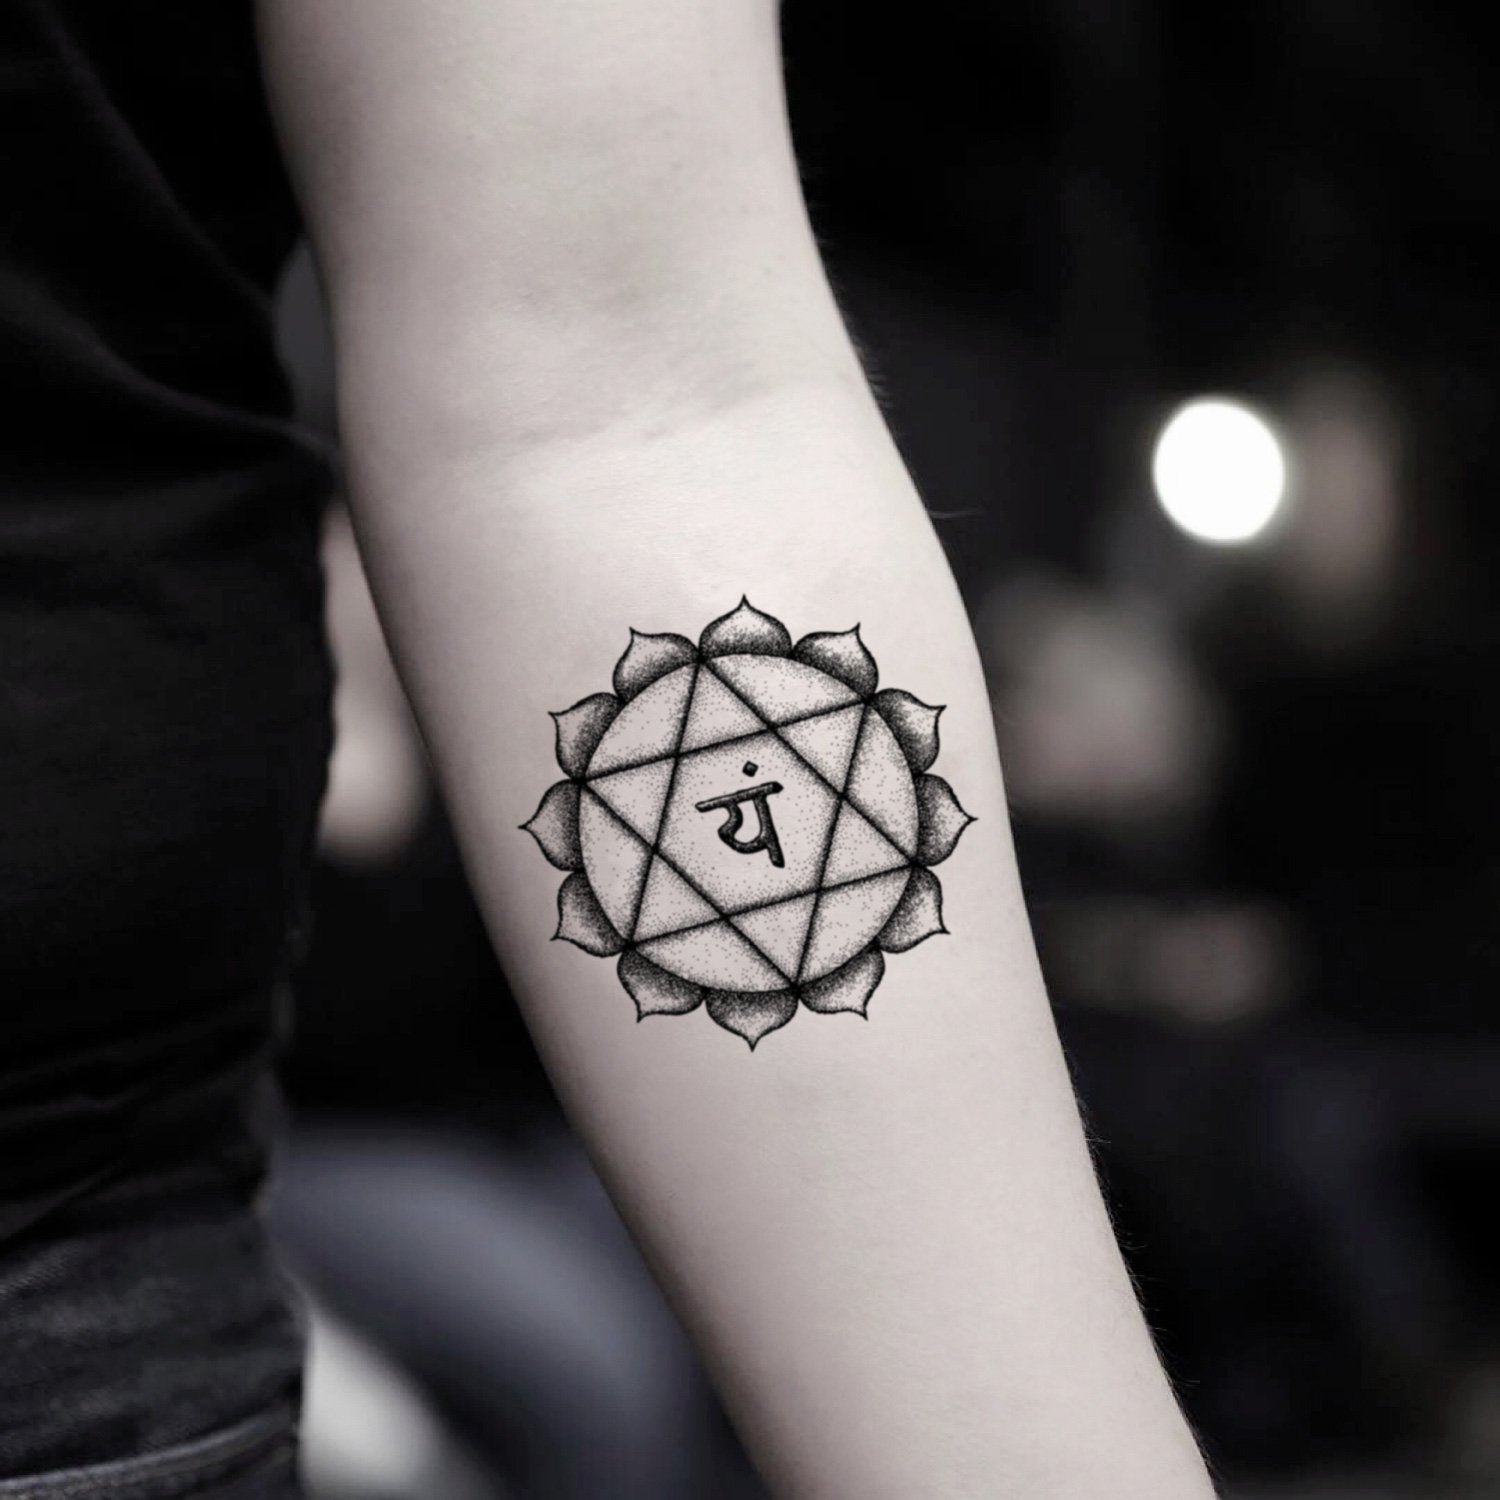 Personal Empowerment Mandala/Visionary Dream Catcher Sacred Tattoo Design |  Tania Marie